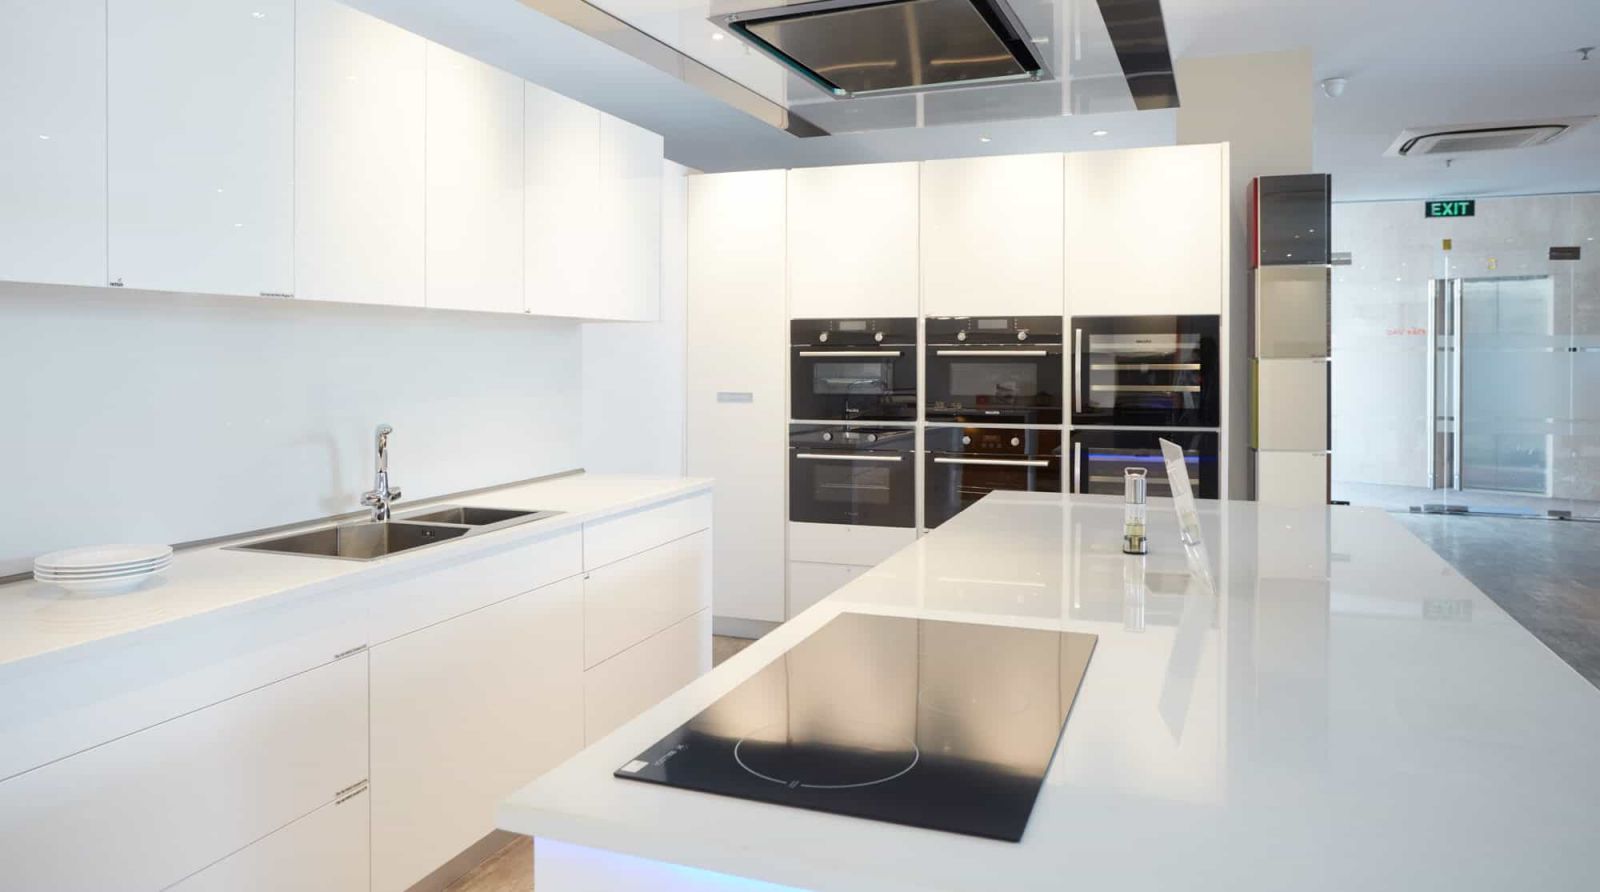 Tủ bếp Acrylic mầu trắng  chữ L kết hợp mặt bàn đá mầu trắng tạo cảm giác rộng rãi cho phòng bếp